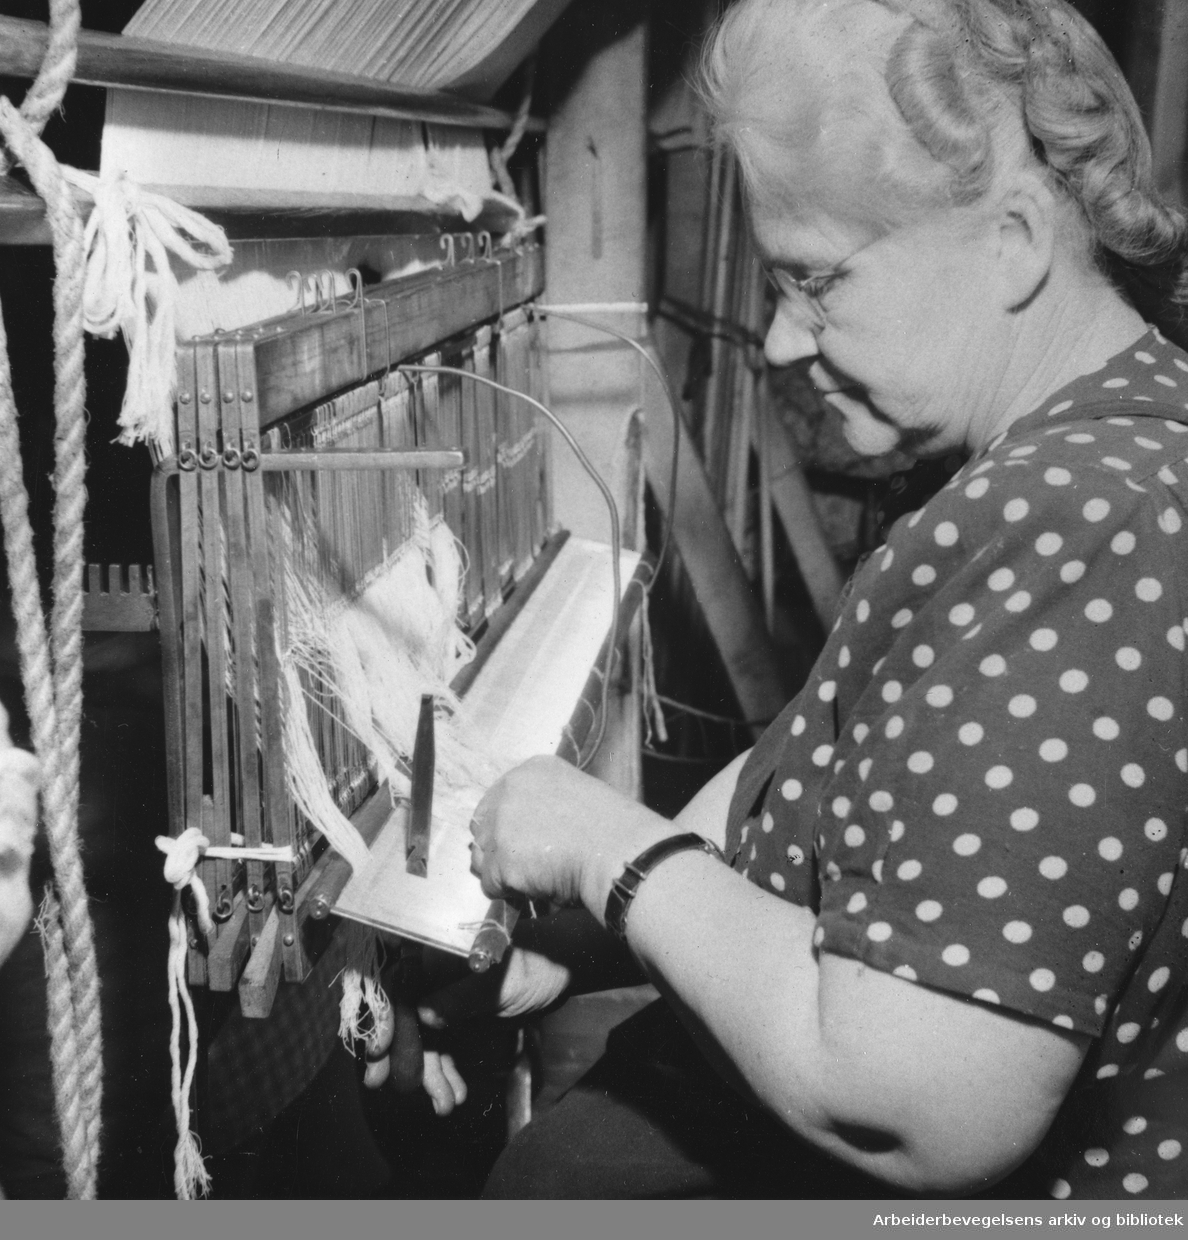 "Hjula - fabrikk med tradisjoner. Bertha Bagge sitter ved "skjeen": vevtrådene skyves sammen slik at veven blir tett". Billedreportasje fra Hjula Væverier i Magasinet for Alle, september 1954.